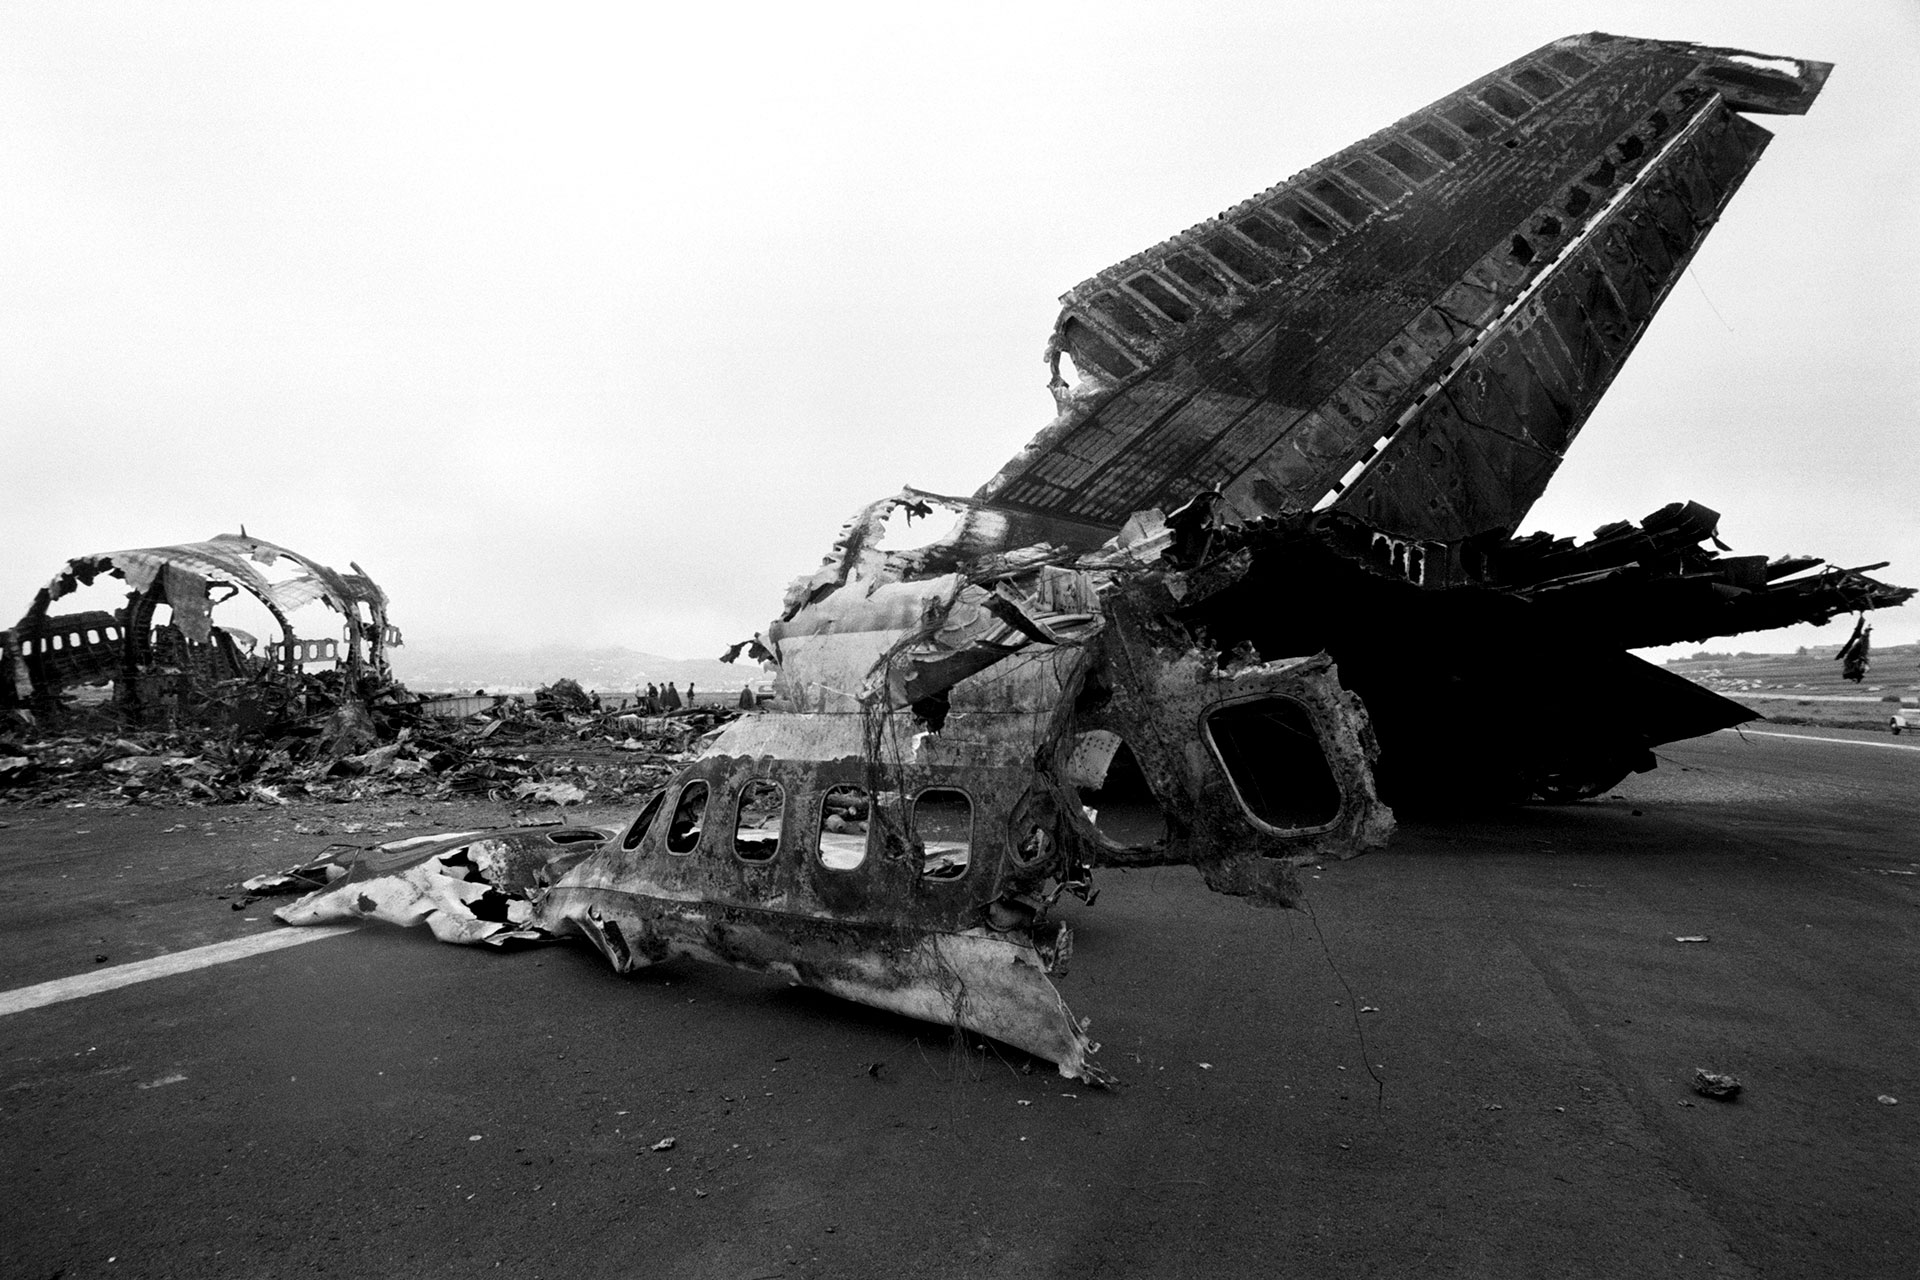 El choque de los dos Boeing 747 en el Aeropuerto Tenerife Los Rodeos en el que perdieron la vida 583 personas fue el peor accidente de la historia de la aviación (Photo by Tony Comiti/Sygma via Getty Images)